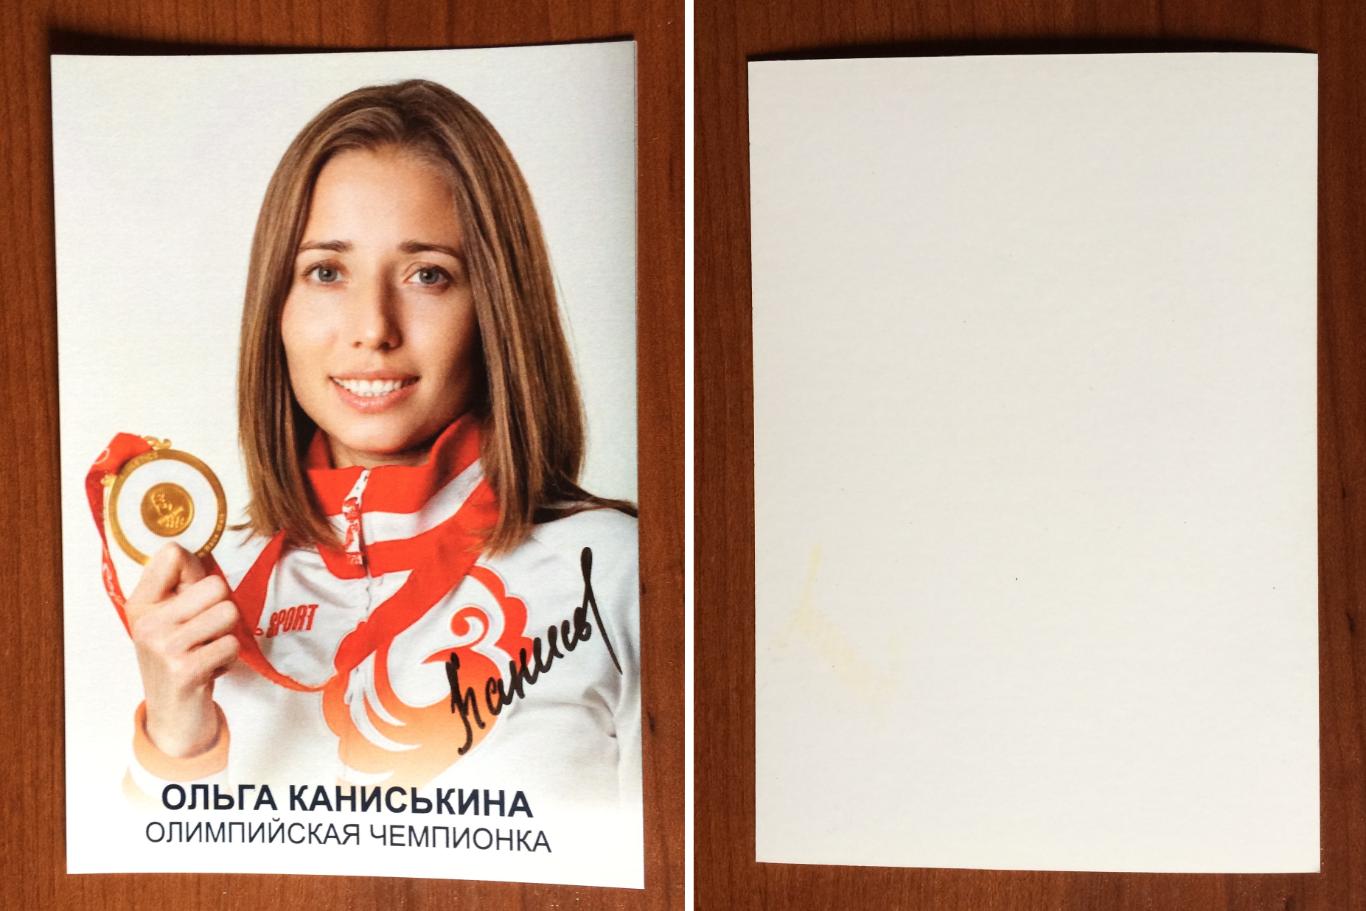 Автограф Ольга Каниськина легкая атлетика ходьба Олимпийское золото 2008 год